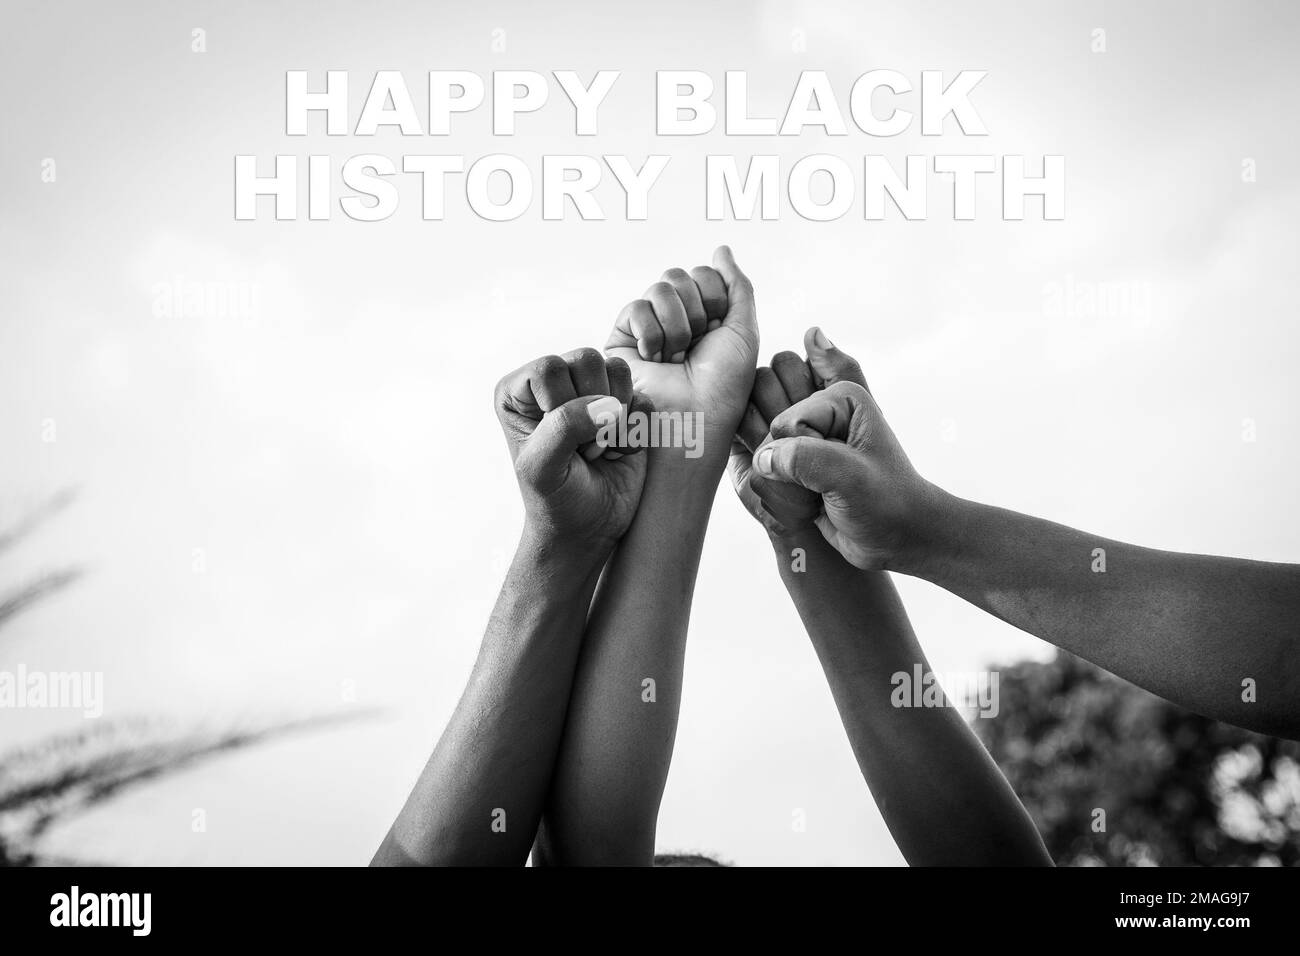 Vier Fäuste afrikanischer Menschen wurden mit den Worten "Happy Black History Month" in den Himmel gehoben, Schwarzweißfoto Stockfoto